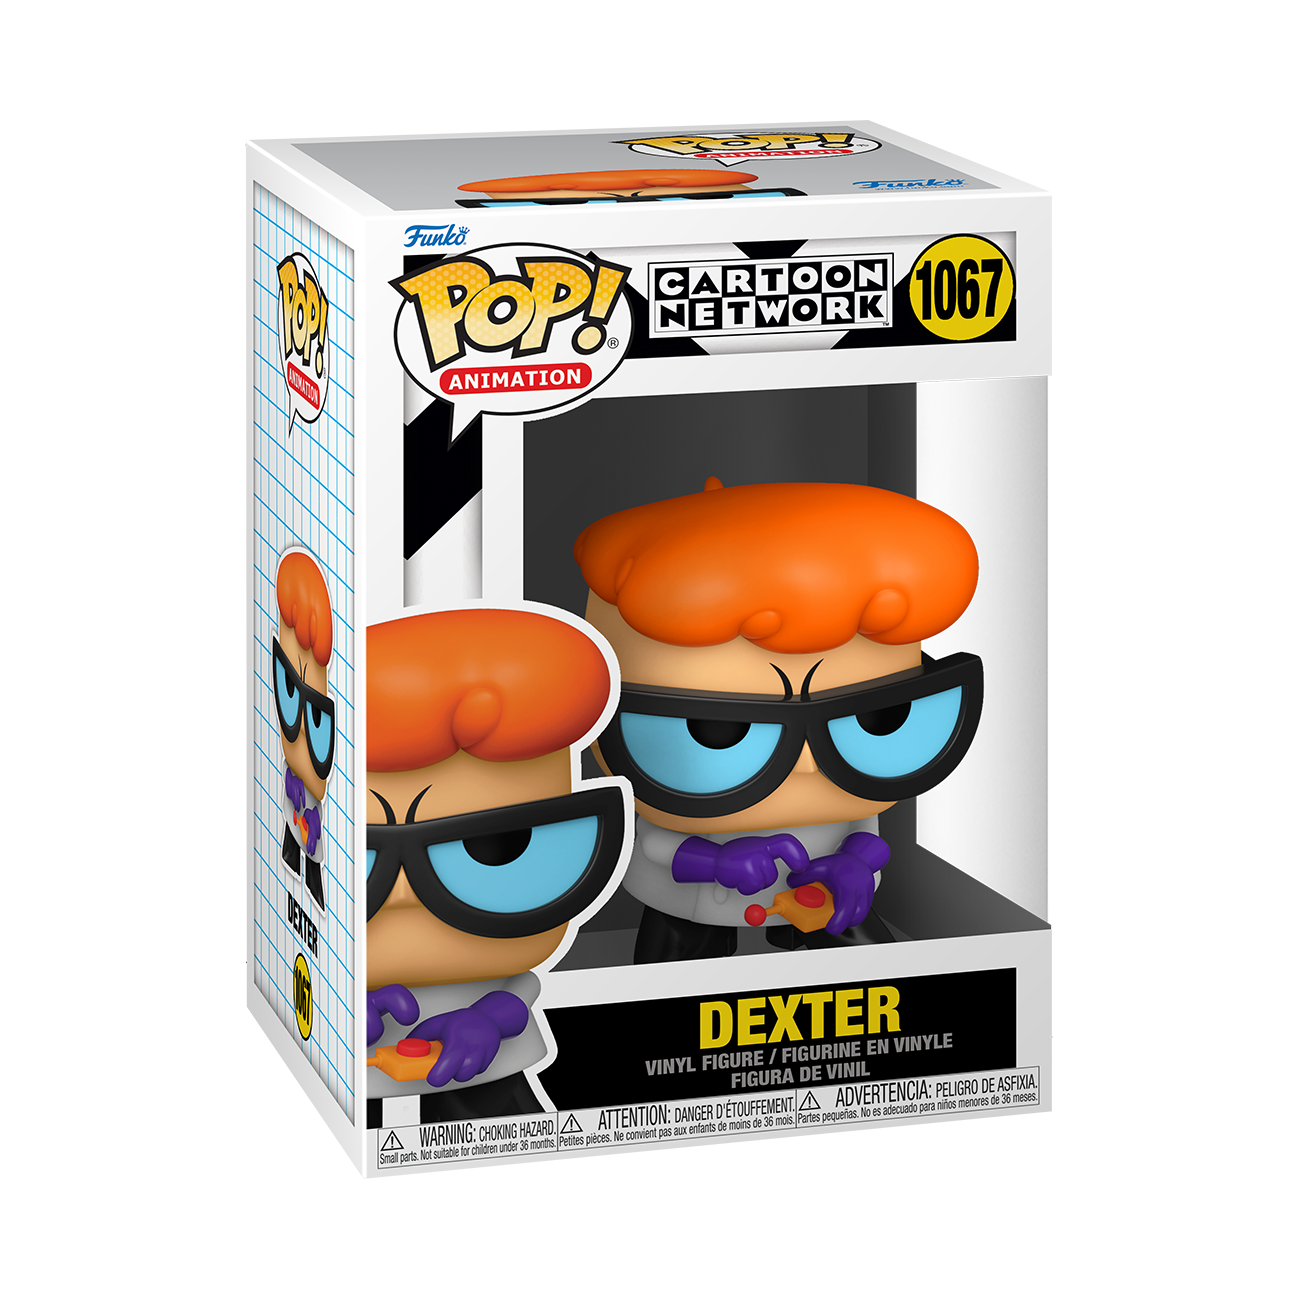 Funko Pop Dexter 1067 Cartoon Network Laboratorio De Dexter